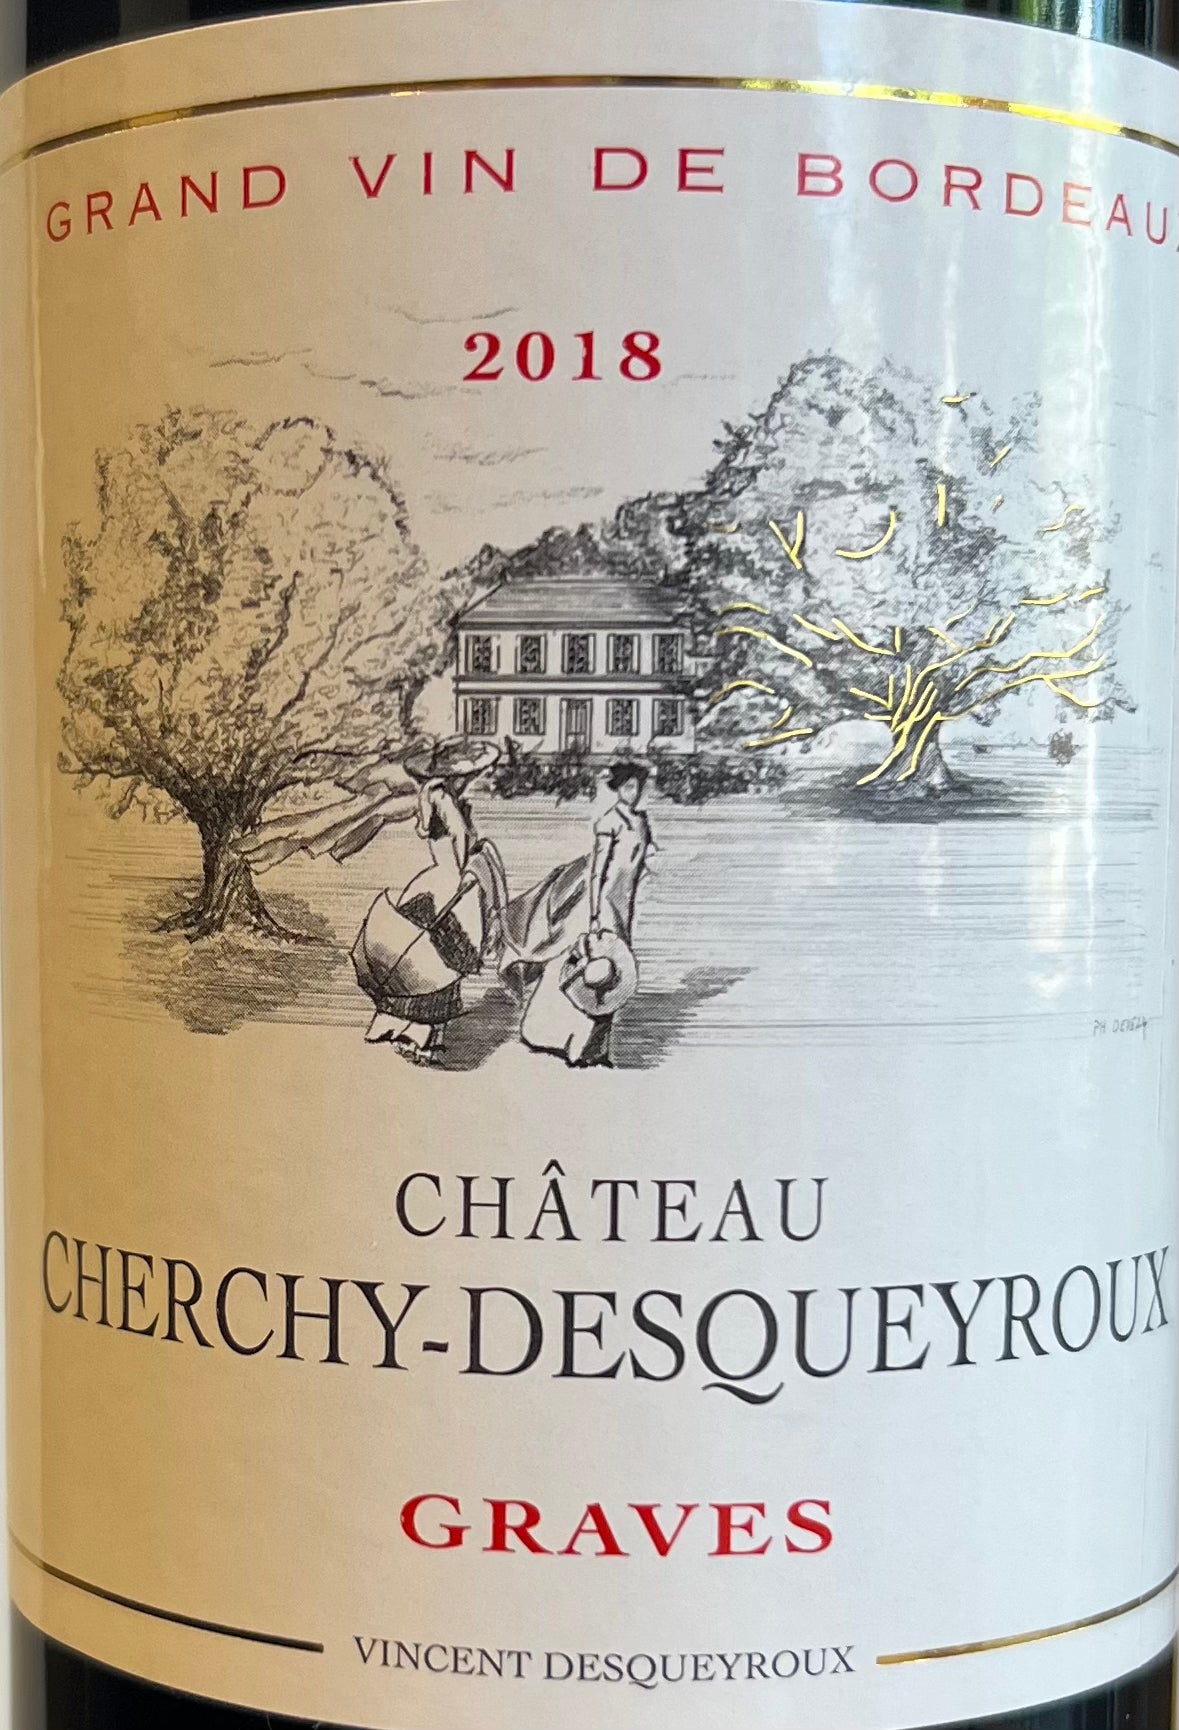 Chateau Cherchy-Desqueryroux - Graves